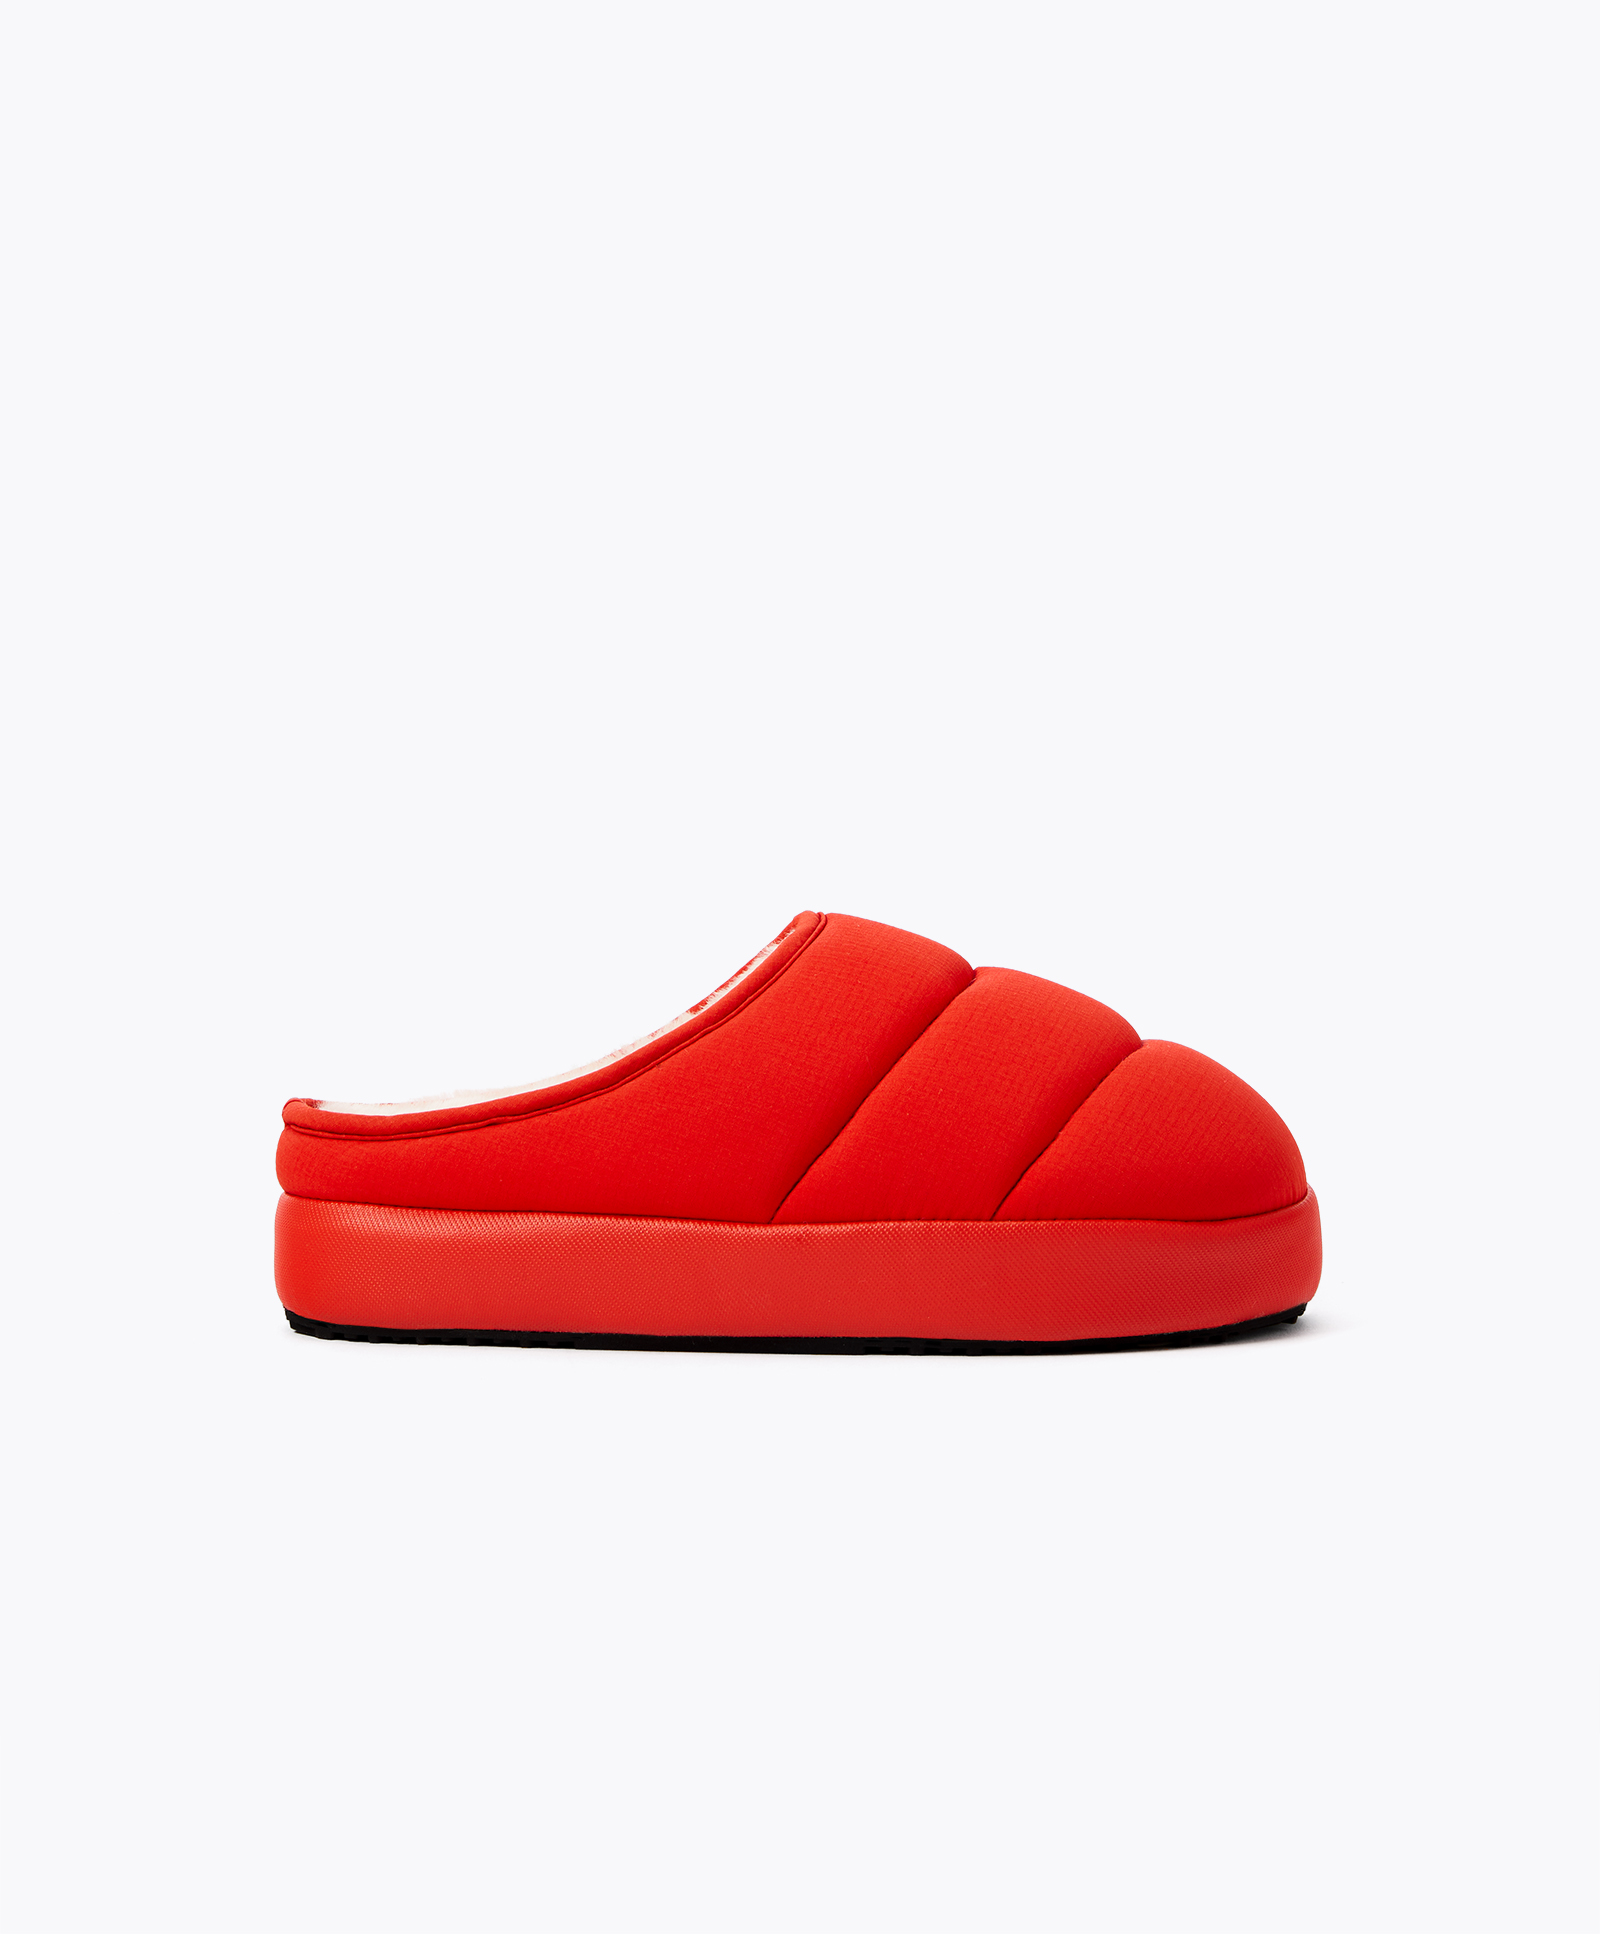 Padded nylon slippers